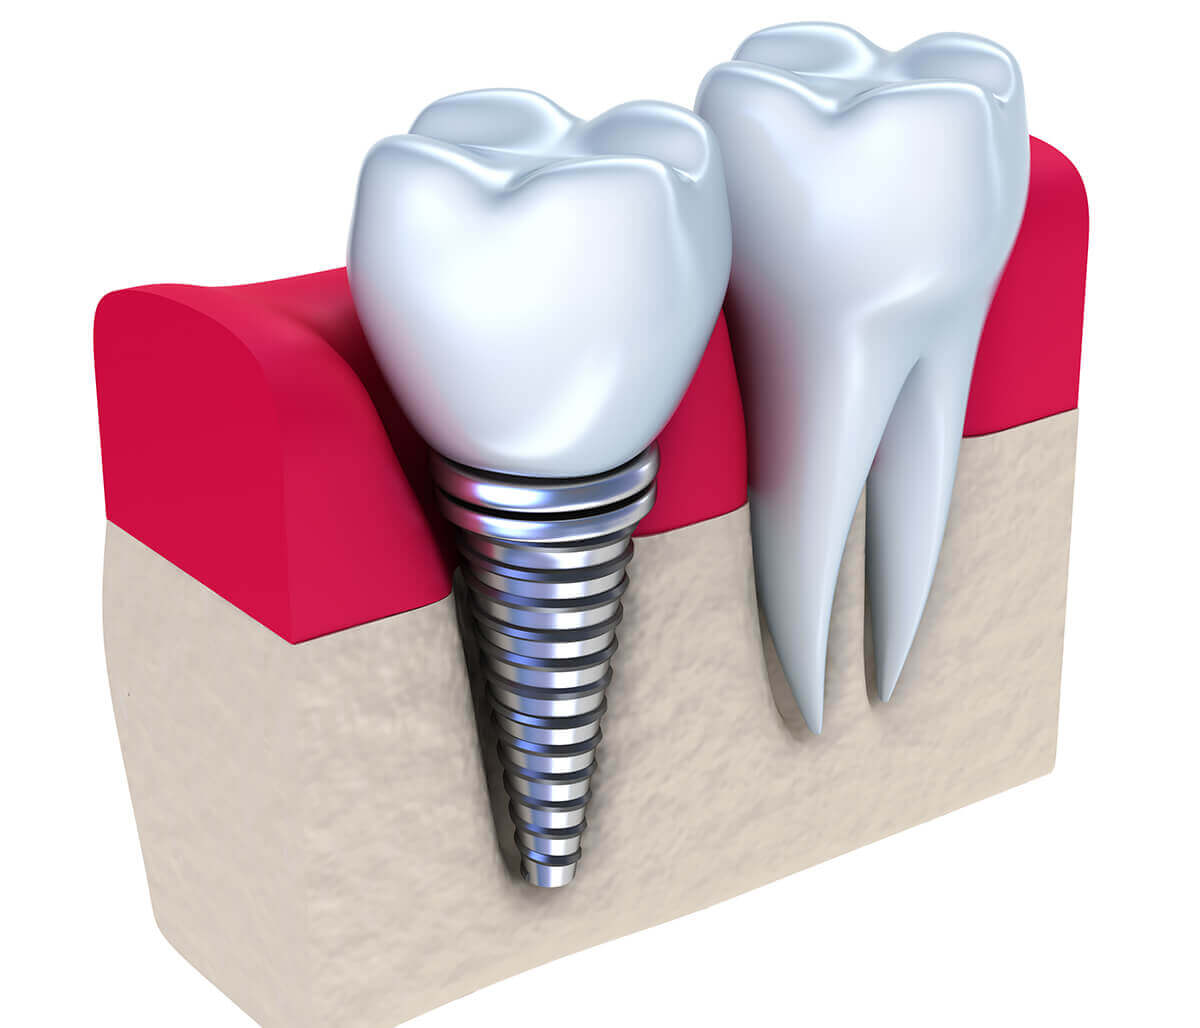 Dental Implants Vs Dentures at Innovative Dental in Philadelphia Area